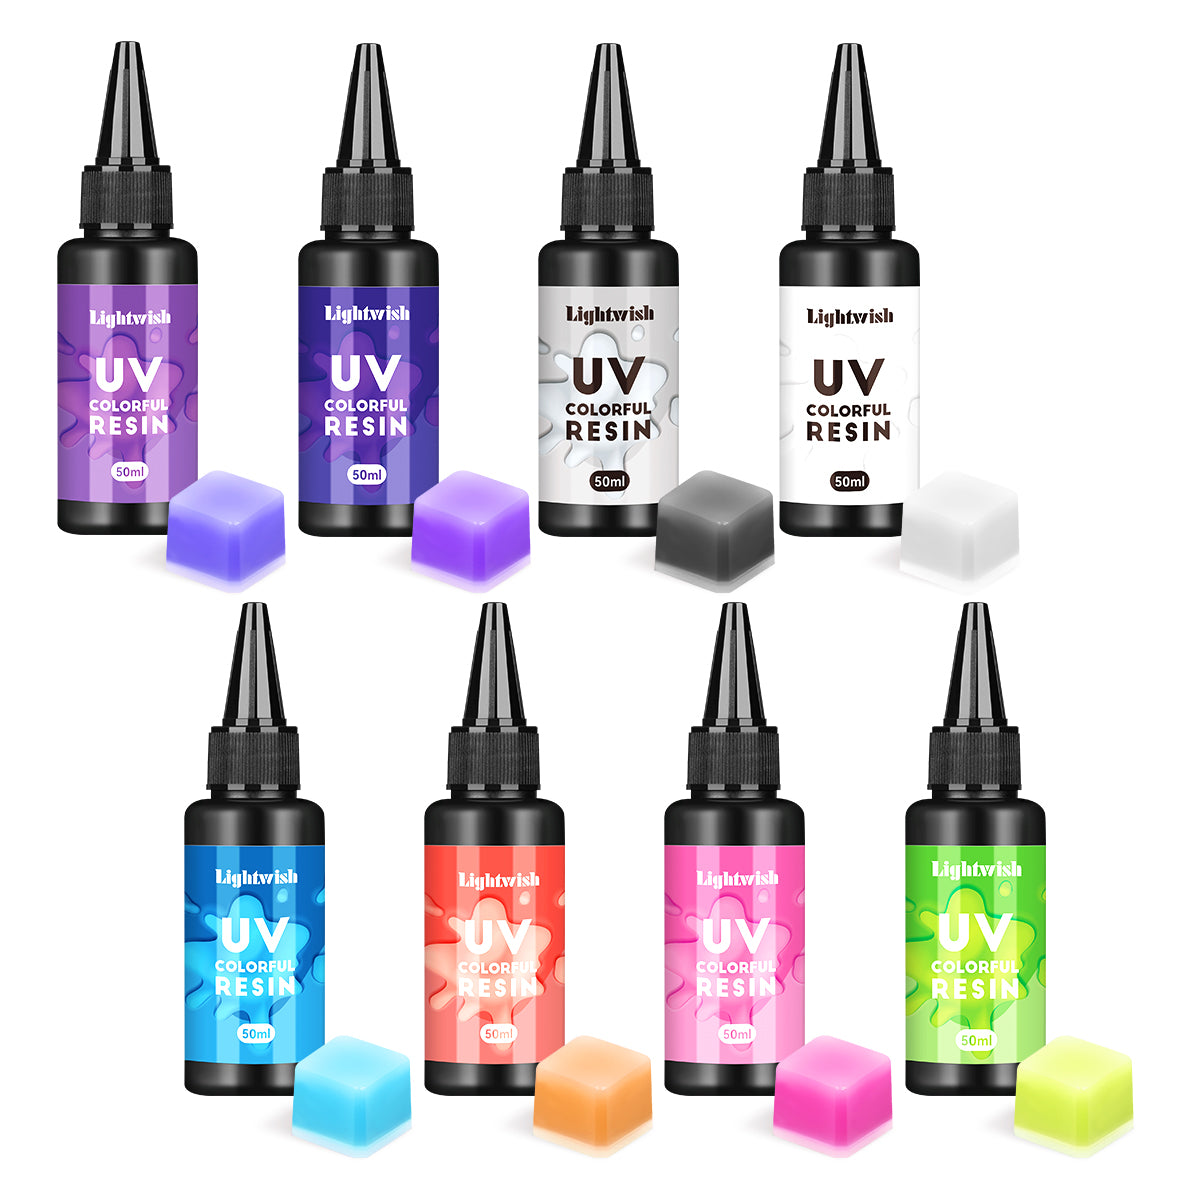 UV Resin Starter Kit With Light, UV Resin, UV Resin Dye, Resin Mold, Resin  Supplies, and Glitter Gifts for Her 